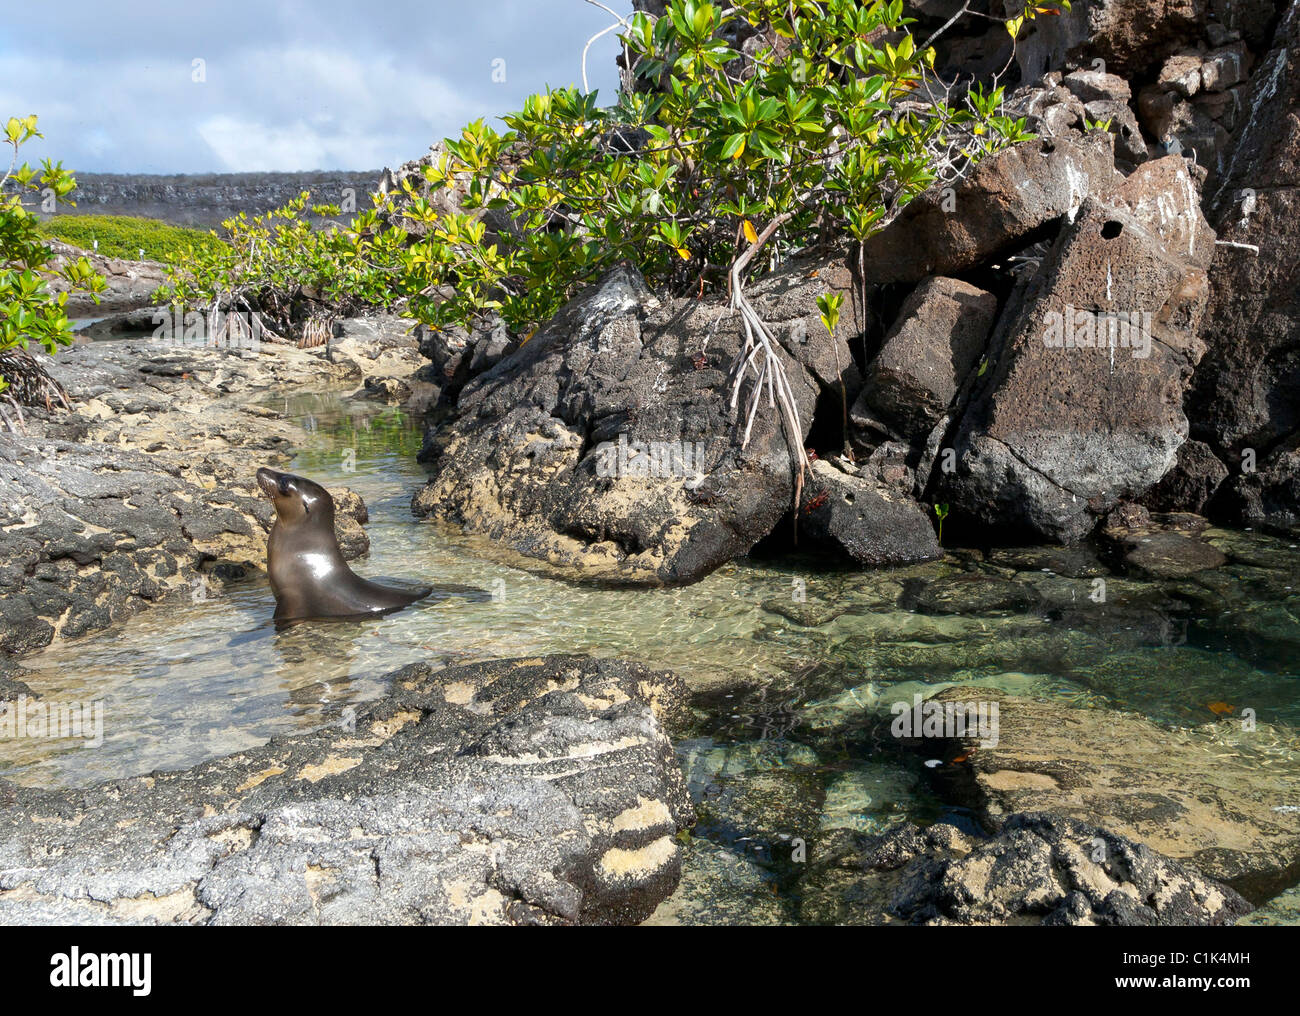 Galapagos Sea lion on Genovesa island, Galapagos, in mangroves Stock Photo